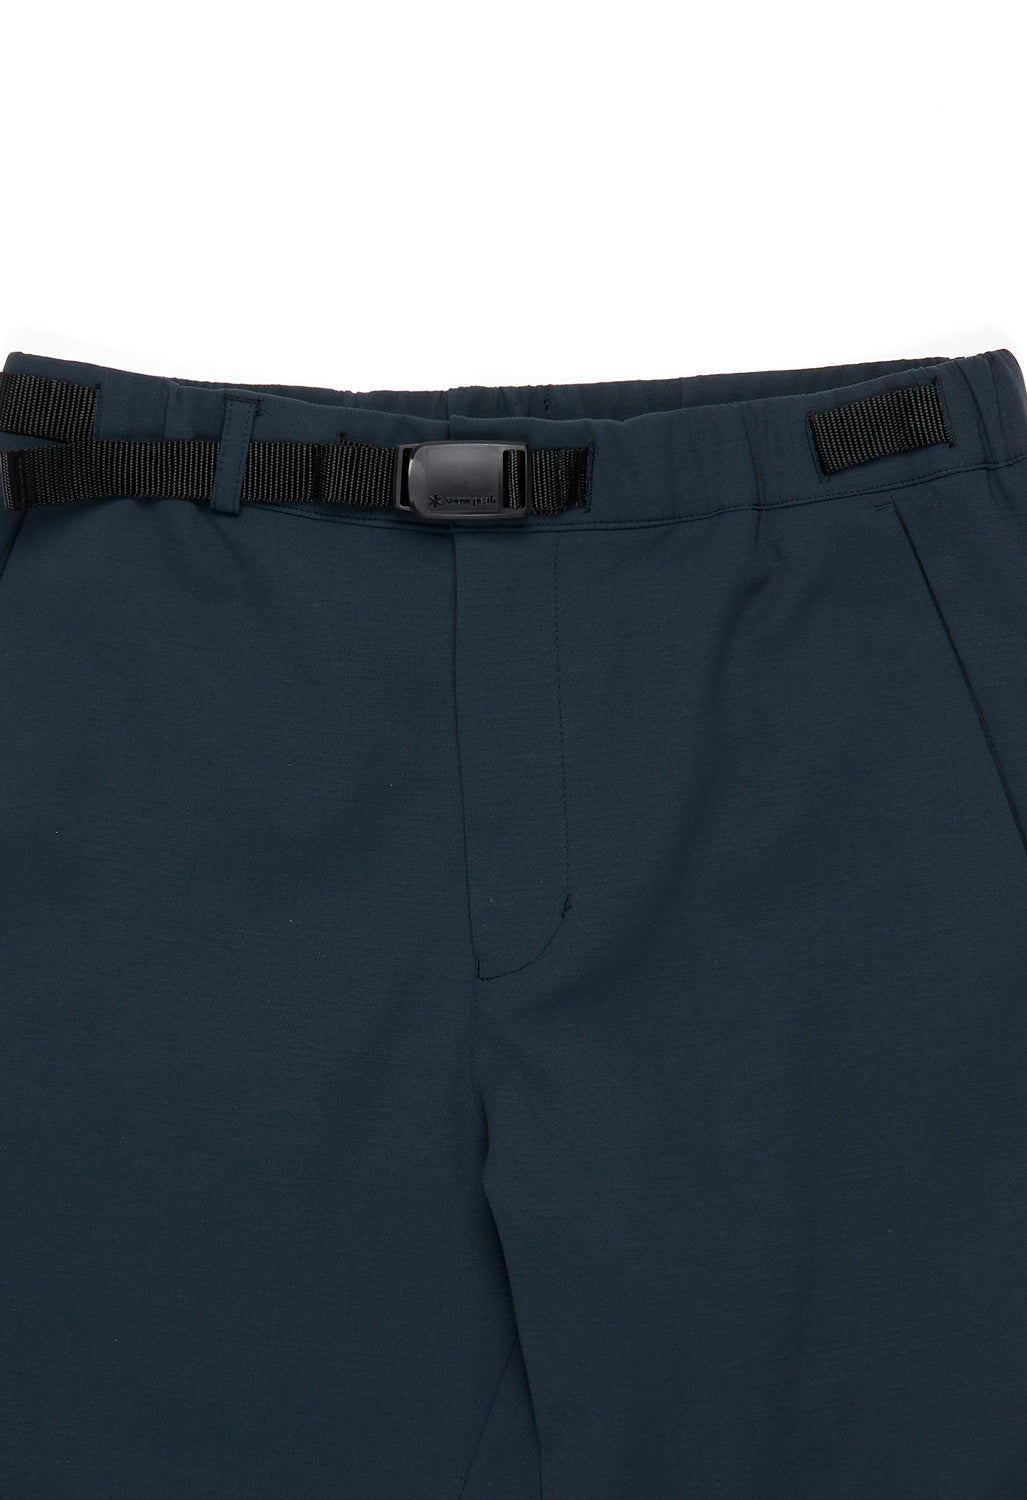 Snow Peak Men's Active Comfort Pants - Navy – Outsiders Store UK